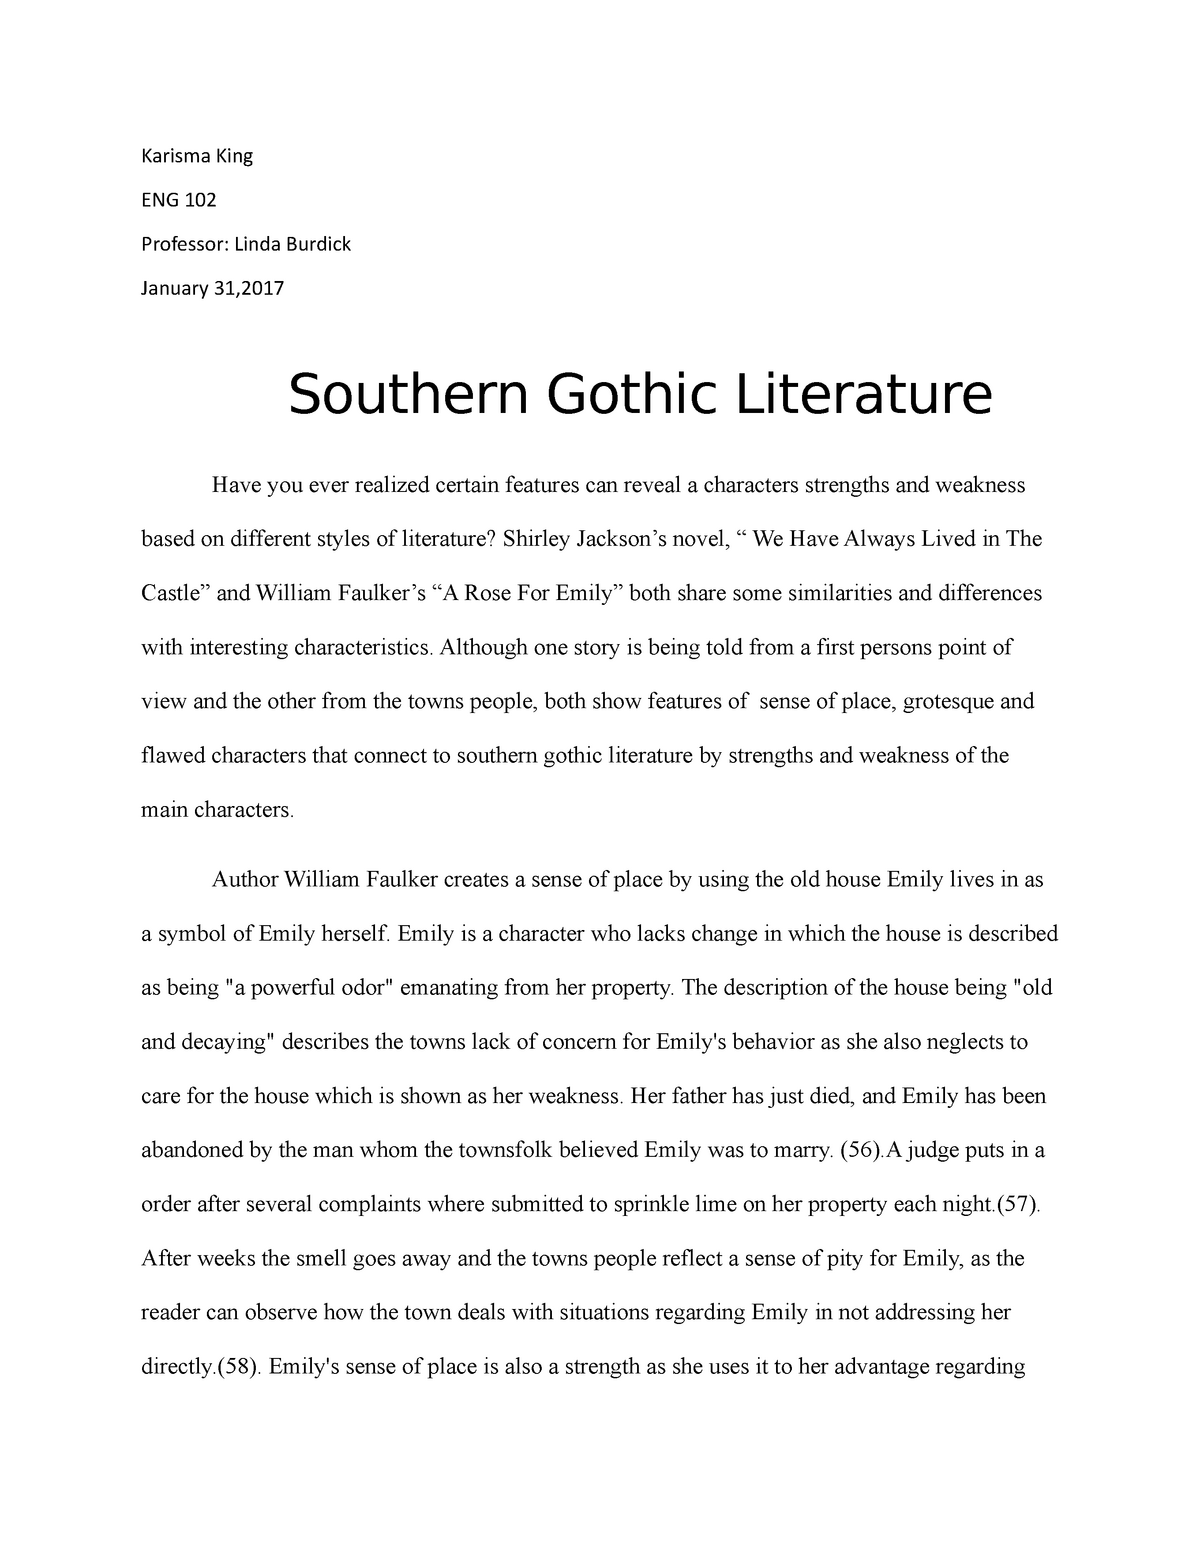 gothic literature essay topics